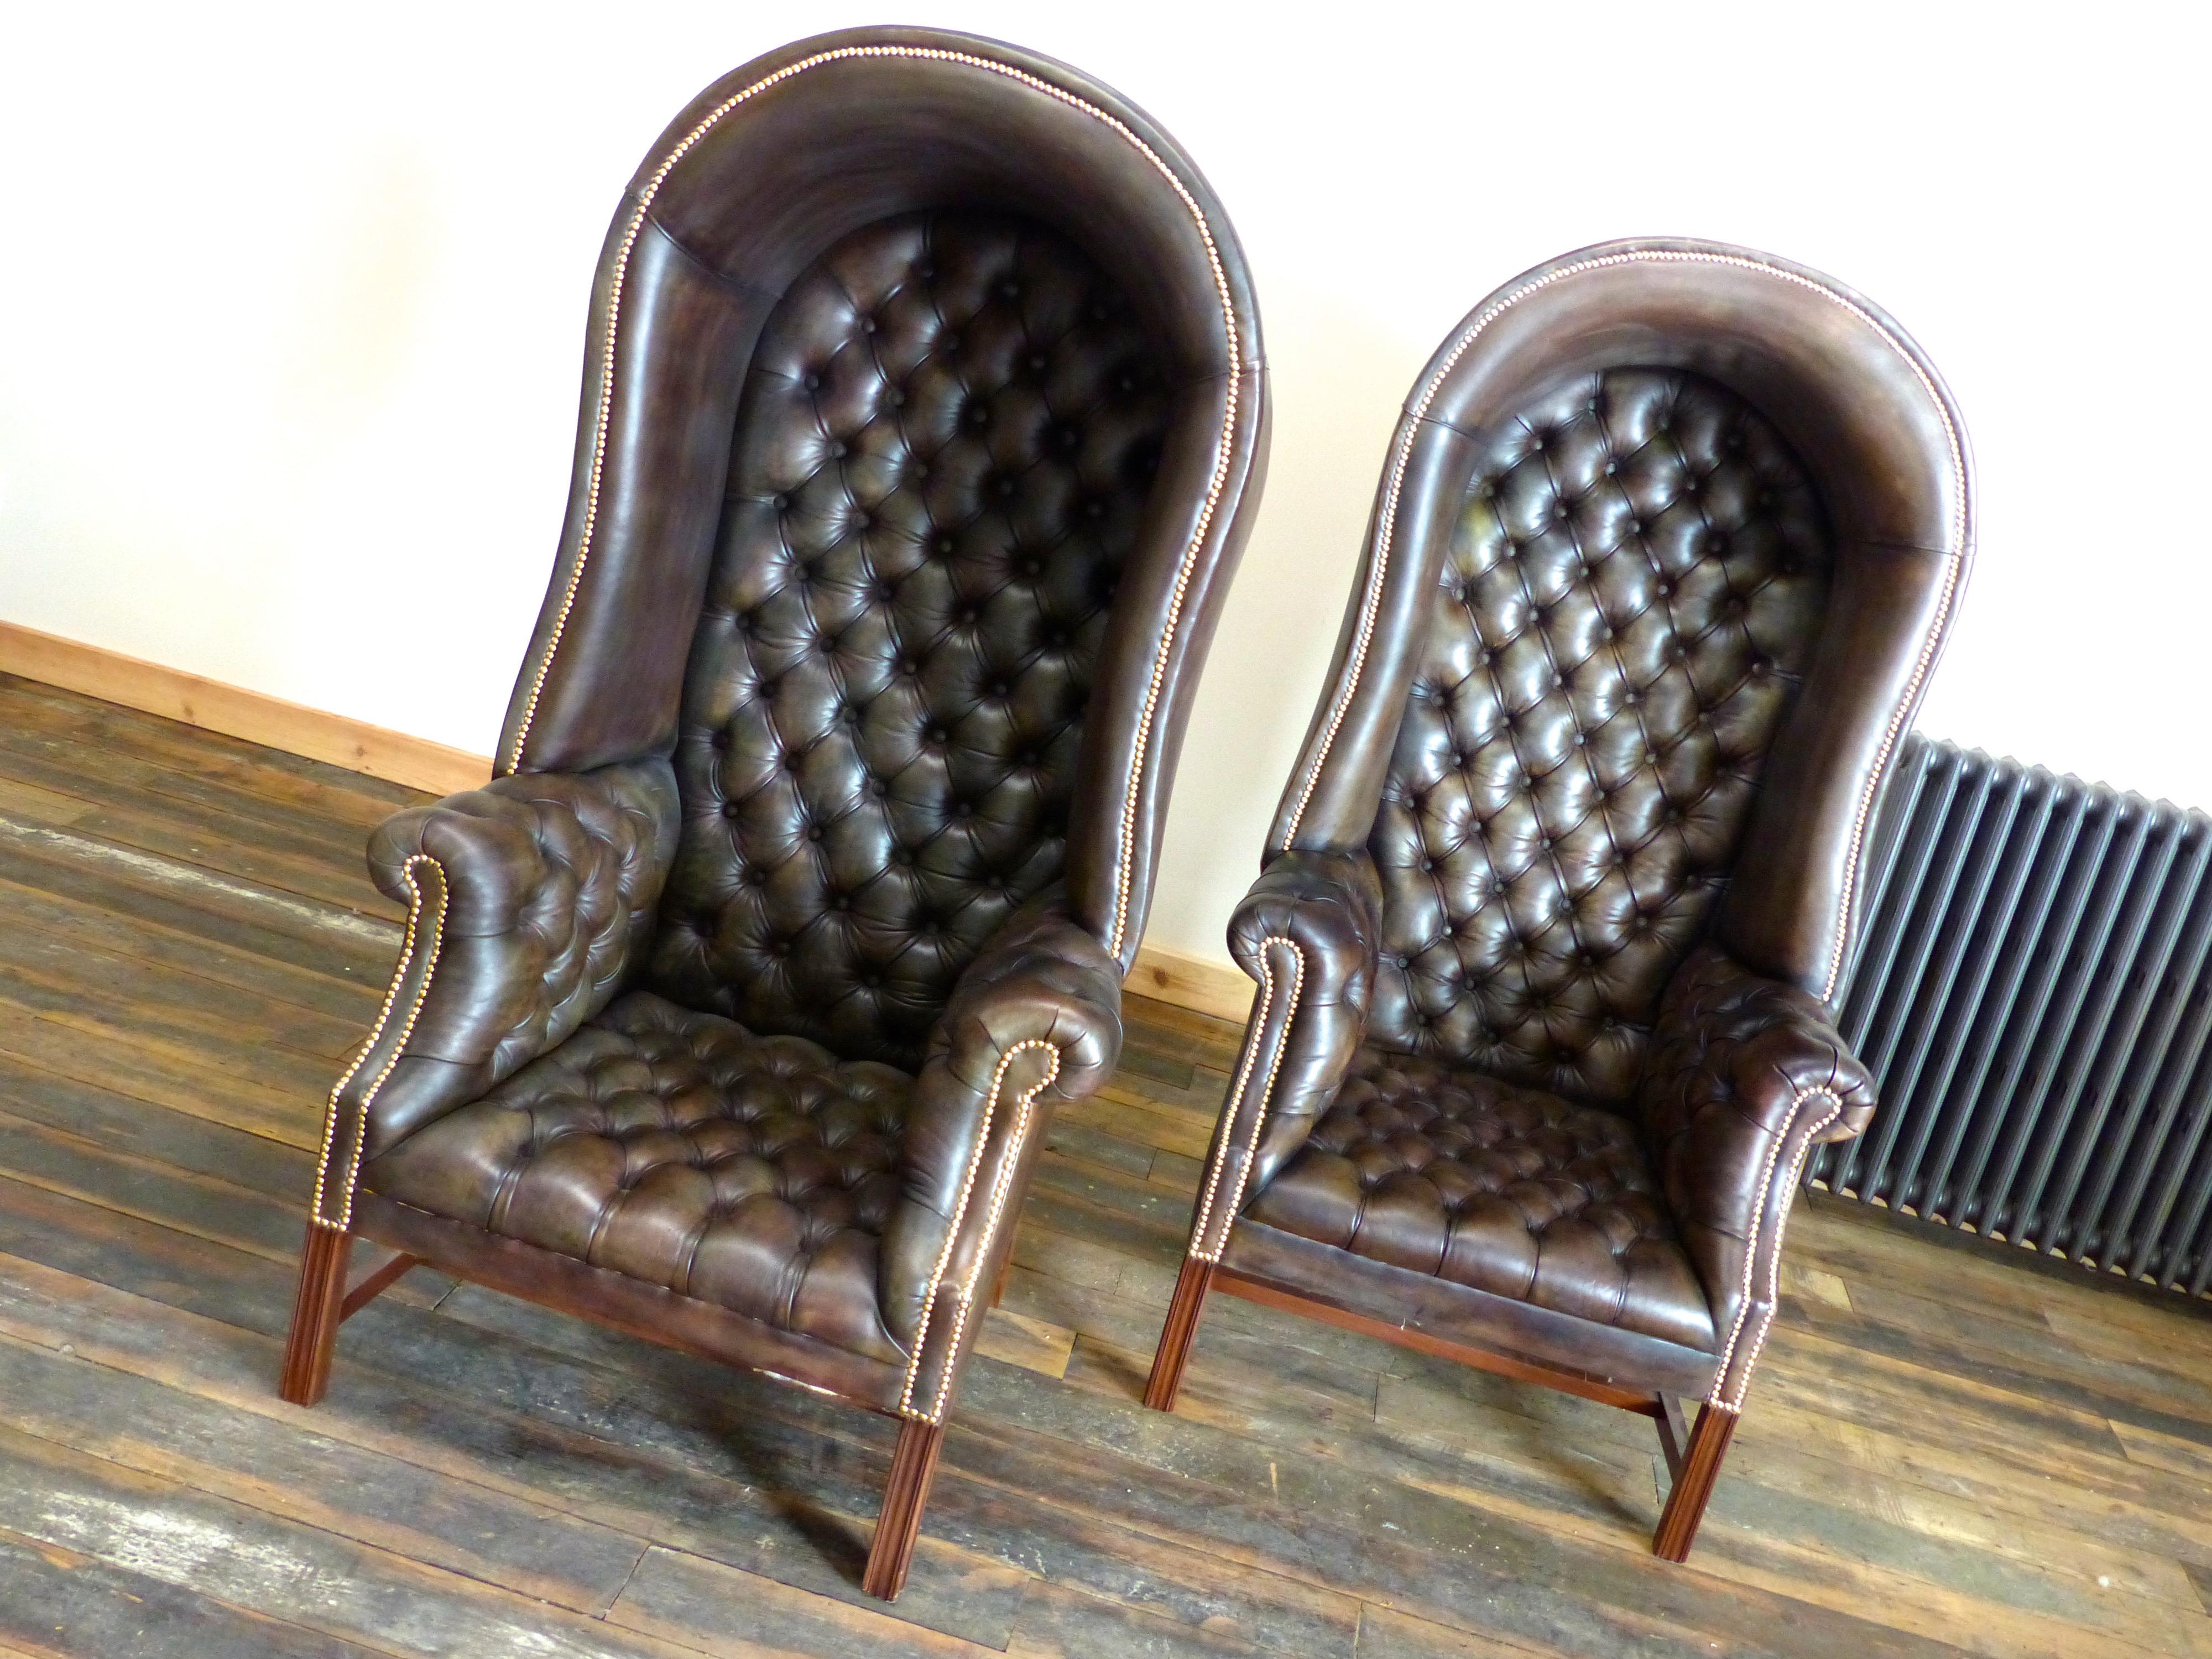 Dies ist. Ein Paar unserer viktorianischen Porter-Stühle, die wir auf Bestellung nach Maß anfertigen.

Der Stil ist sehr ehrlich in seiner Interpretation und seinem Gefühl.  Diese Stücke verleihen dem Raum viel Stil und Seriosität.

Wir bieten sechs